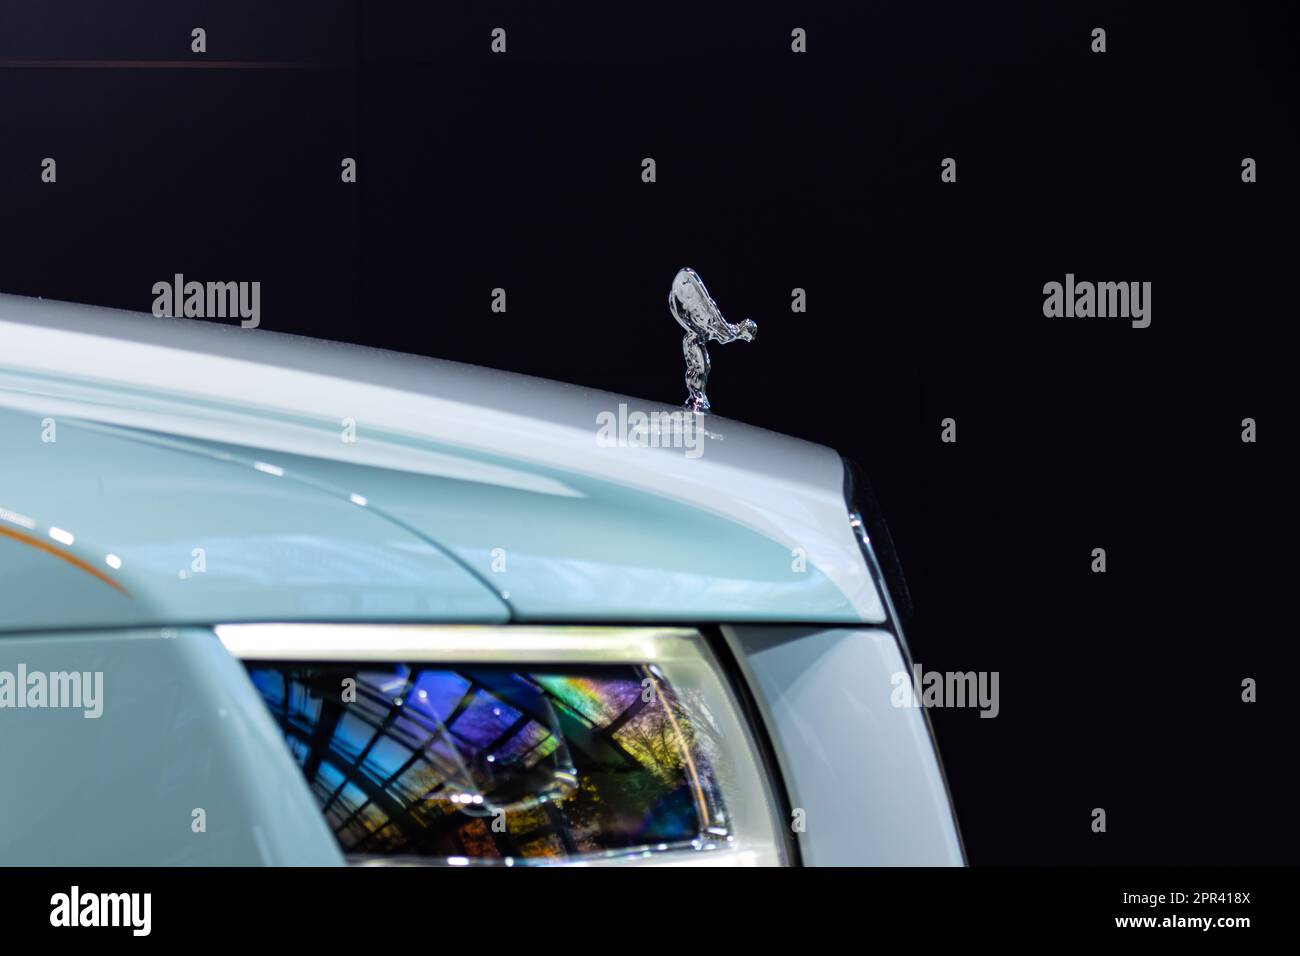 Symbole de l'insigne Spirit of Ecstasy sur Rolls Royce Ghost à BMW Welt, Munich Allemagne Banque D'Images